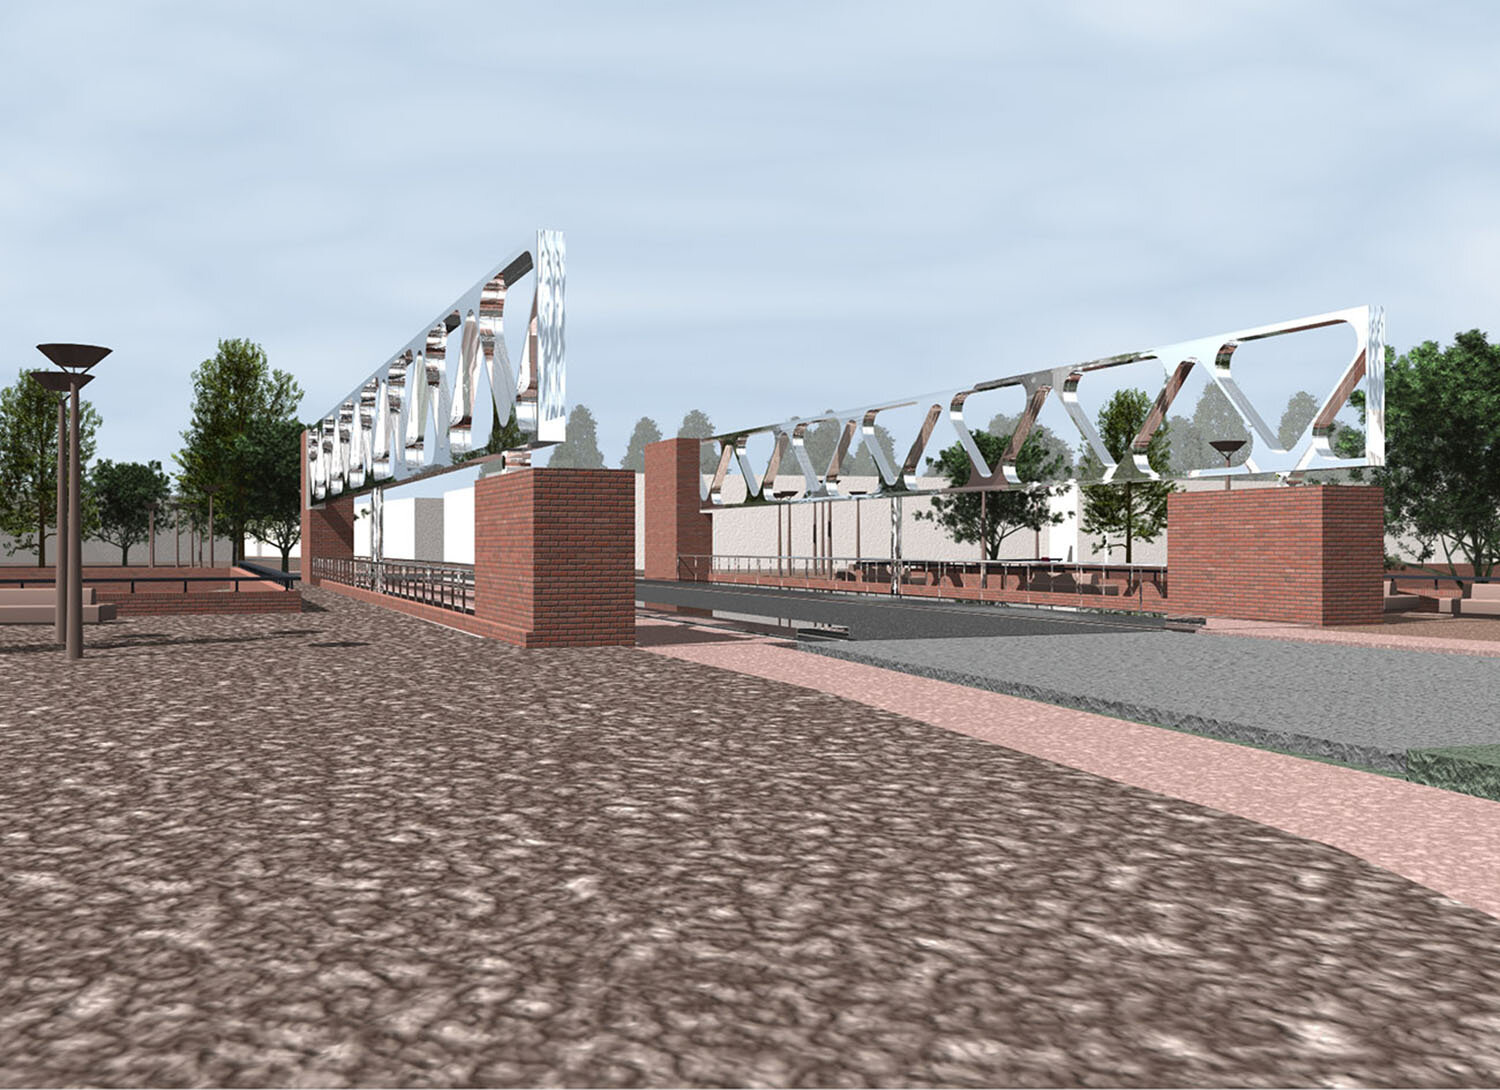 1540, de nieuwe bartenbrug, rendering05, website.jpg